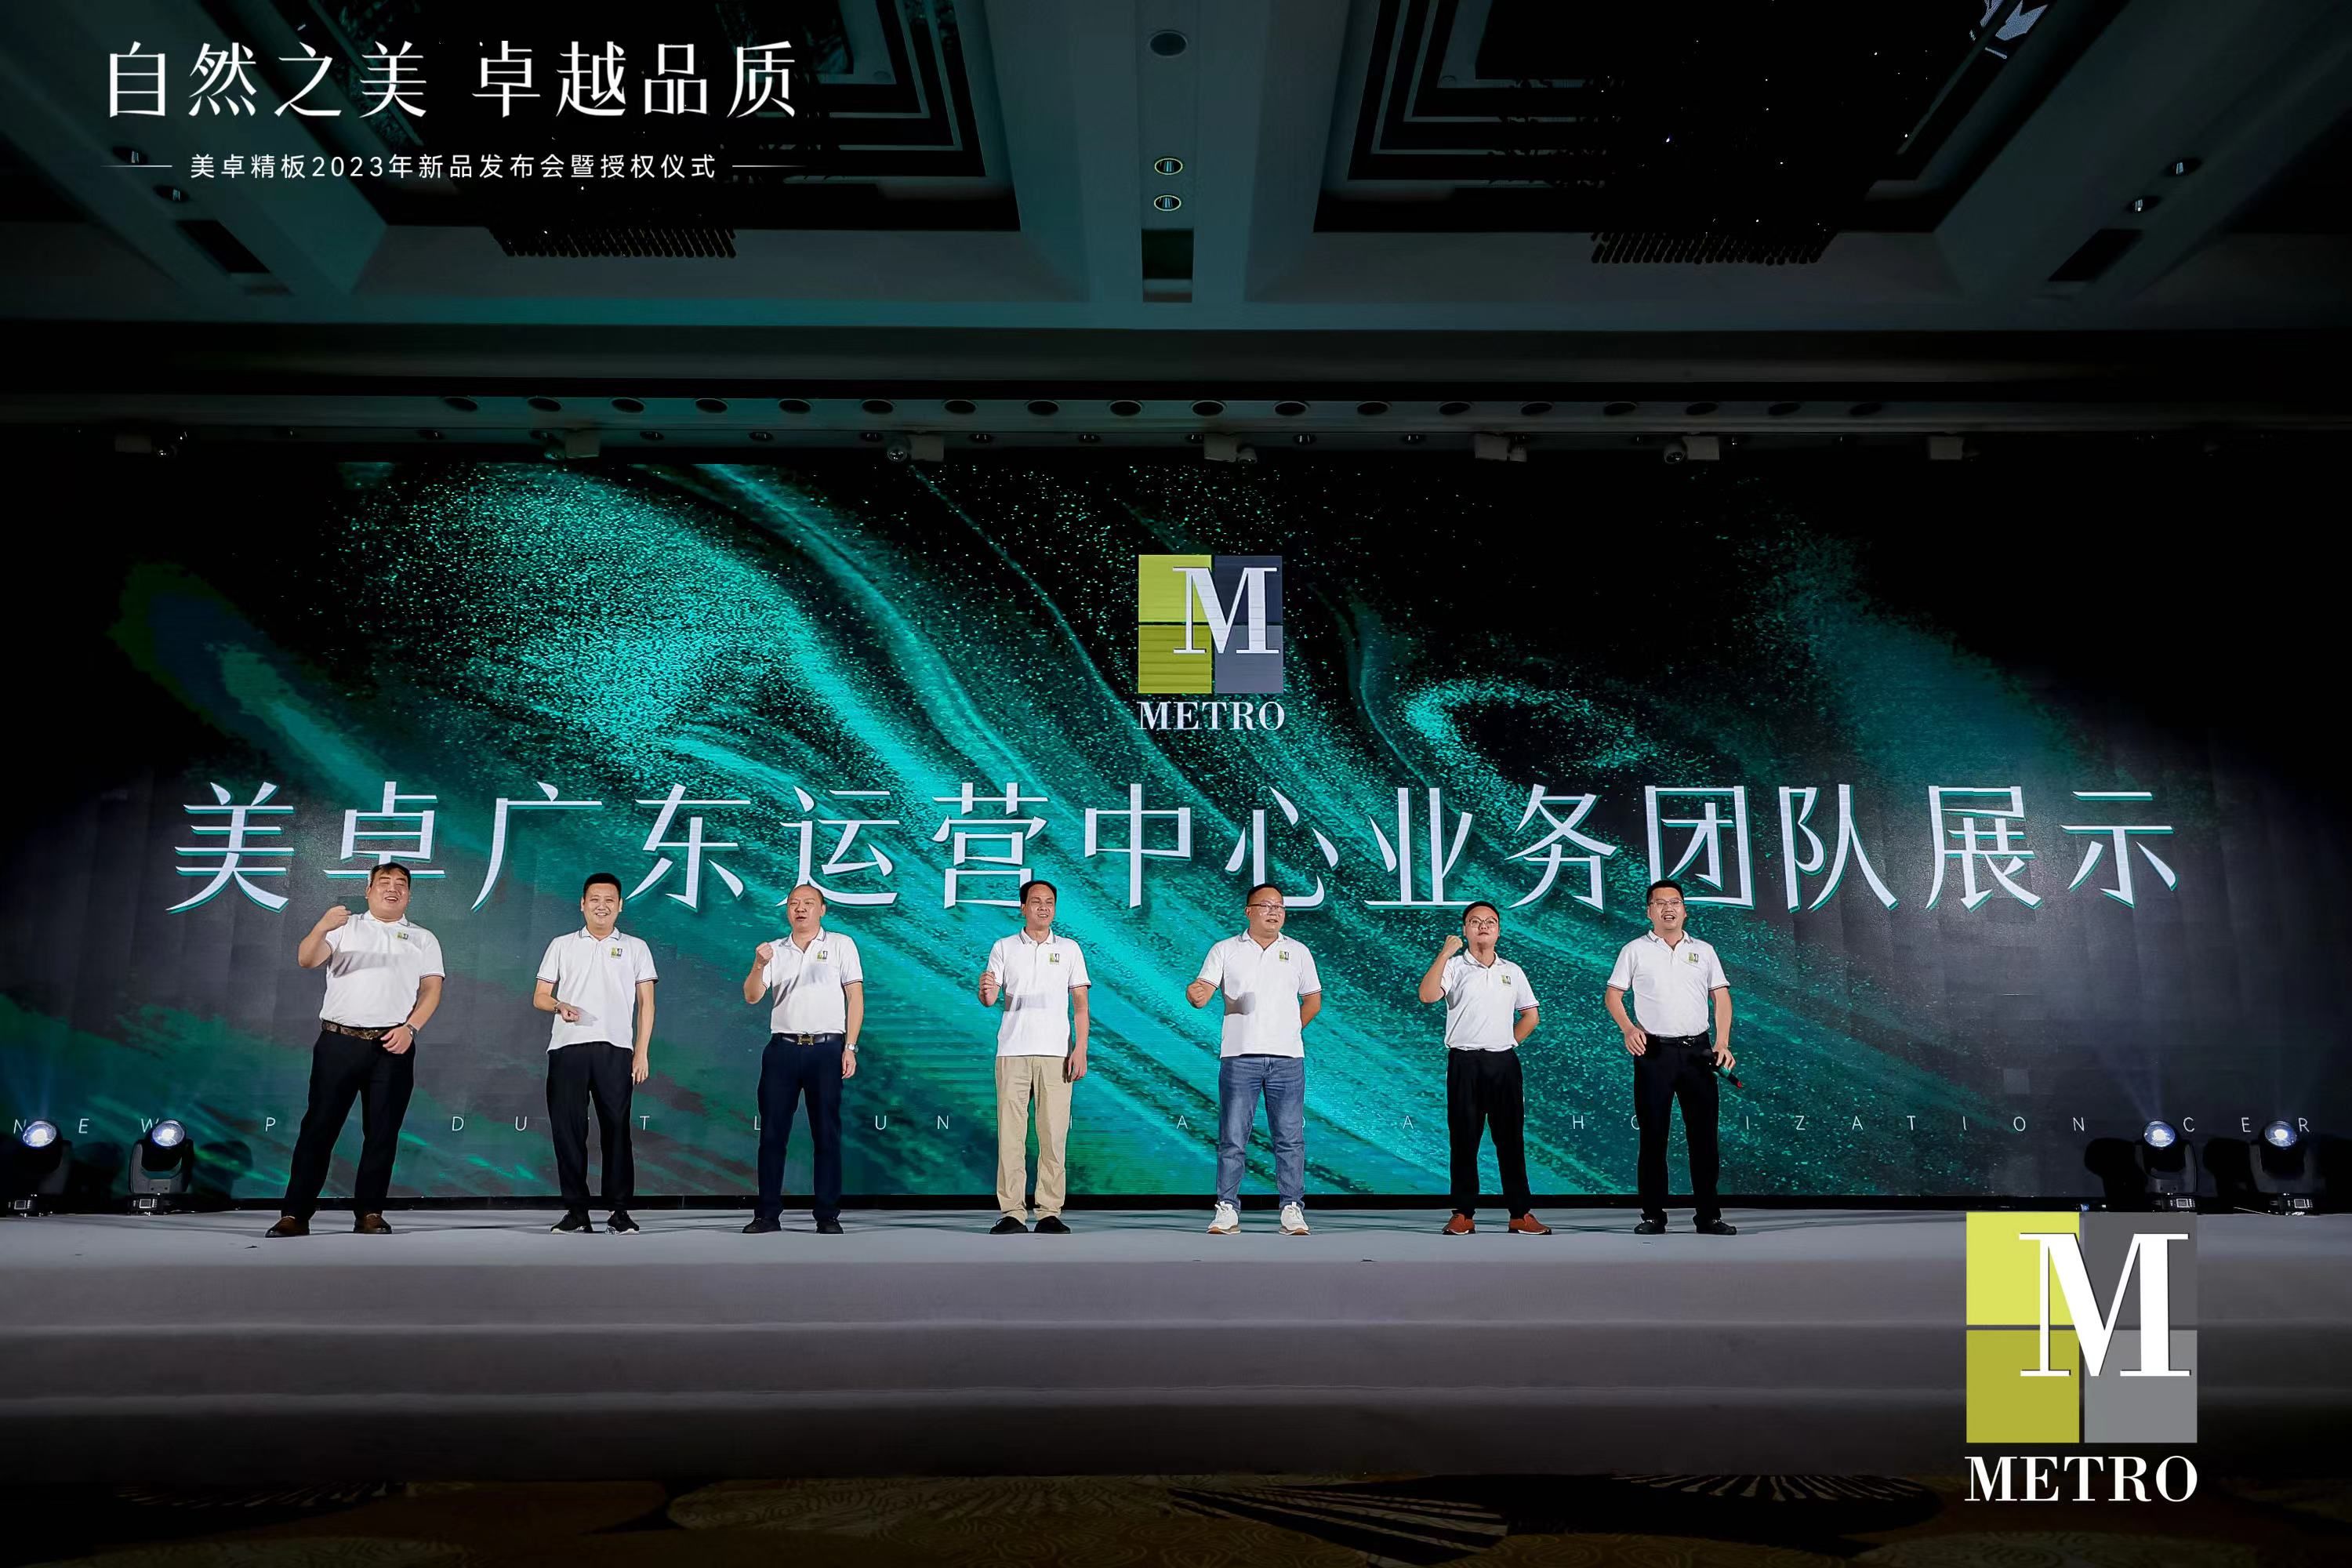 MetroMFC美卓精板5G时代1.0系列新品重磅首发 引领中国美好人居新趋势